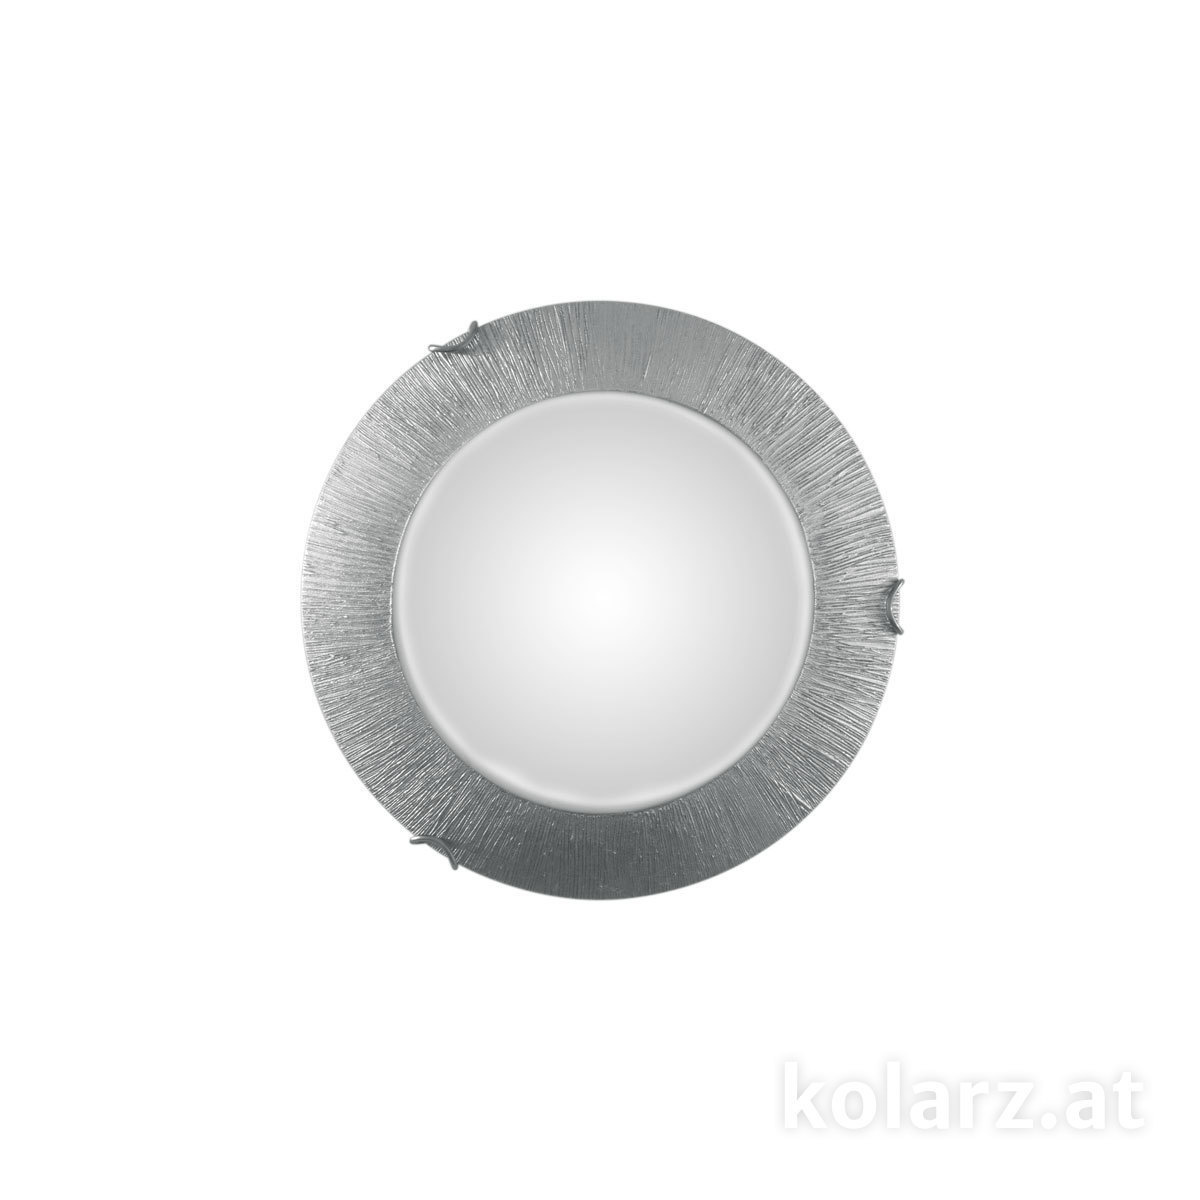 KOLARZ Leuchten Deckenleuchten & Deckenlampen von KOLARZ Leuchten Deckenleuchte MOON 30 cm A1306.11.5.SunAg